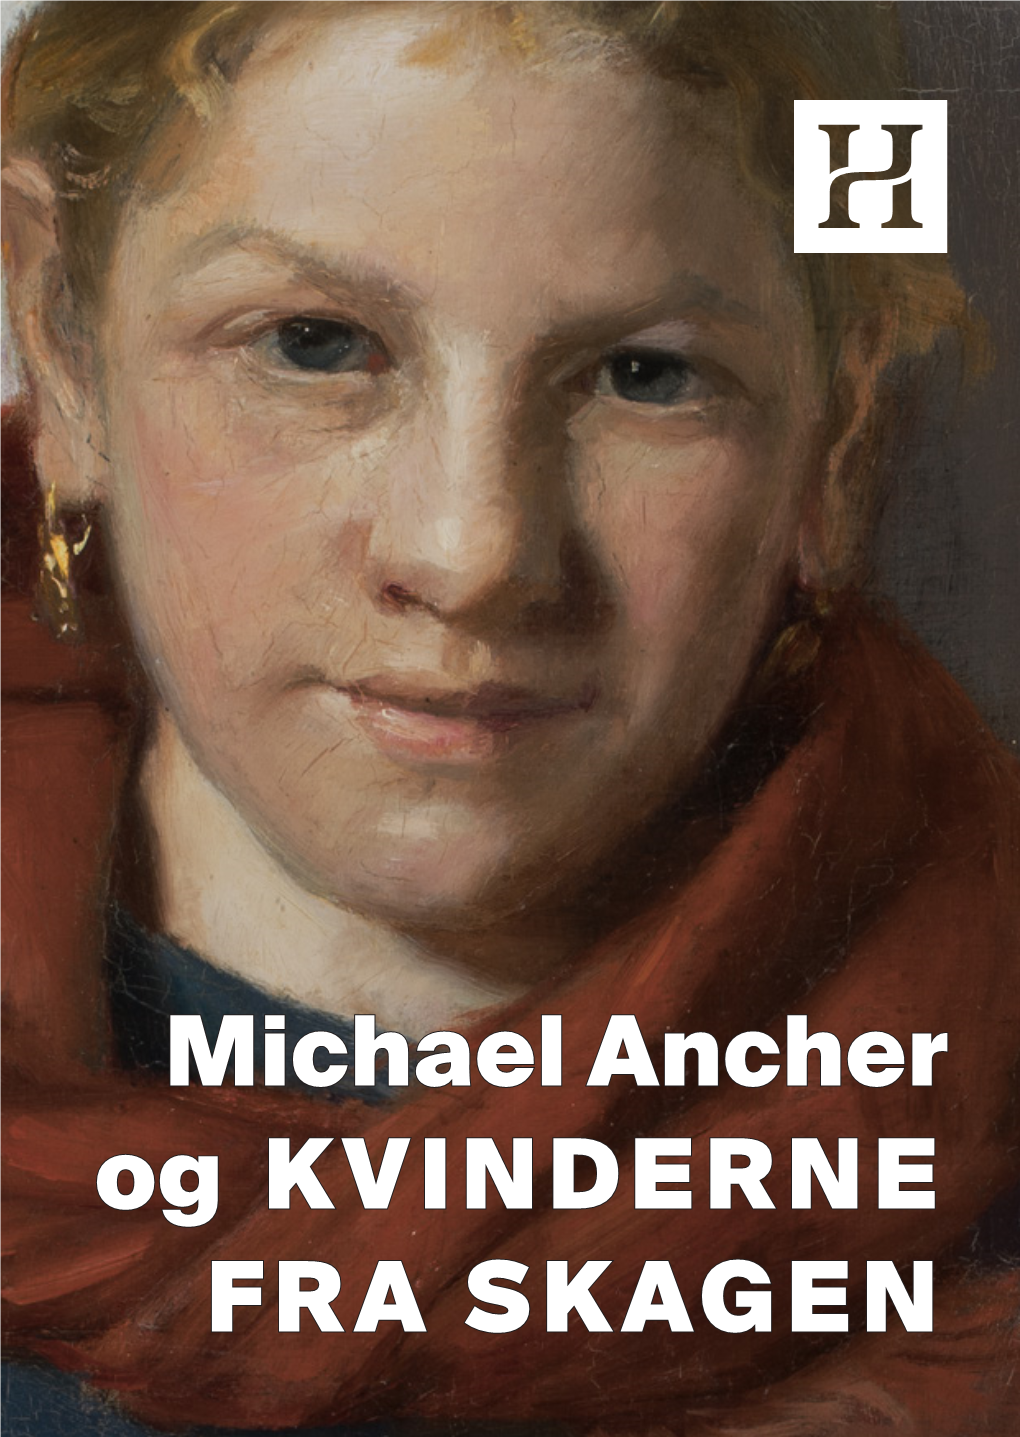 Michael Ancher Og KVINDERNE FRA SKAGEN Udstillingsprojektet Er Støttet Af